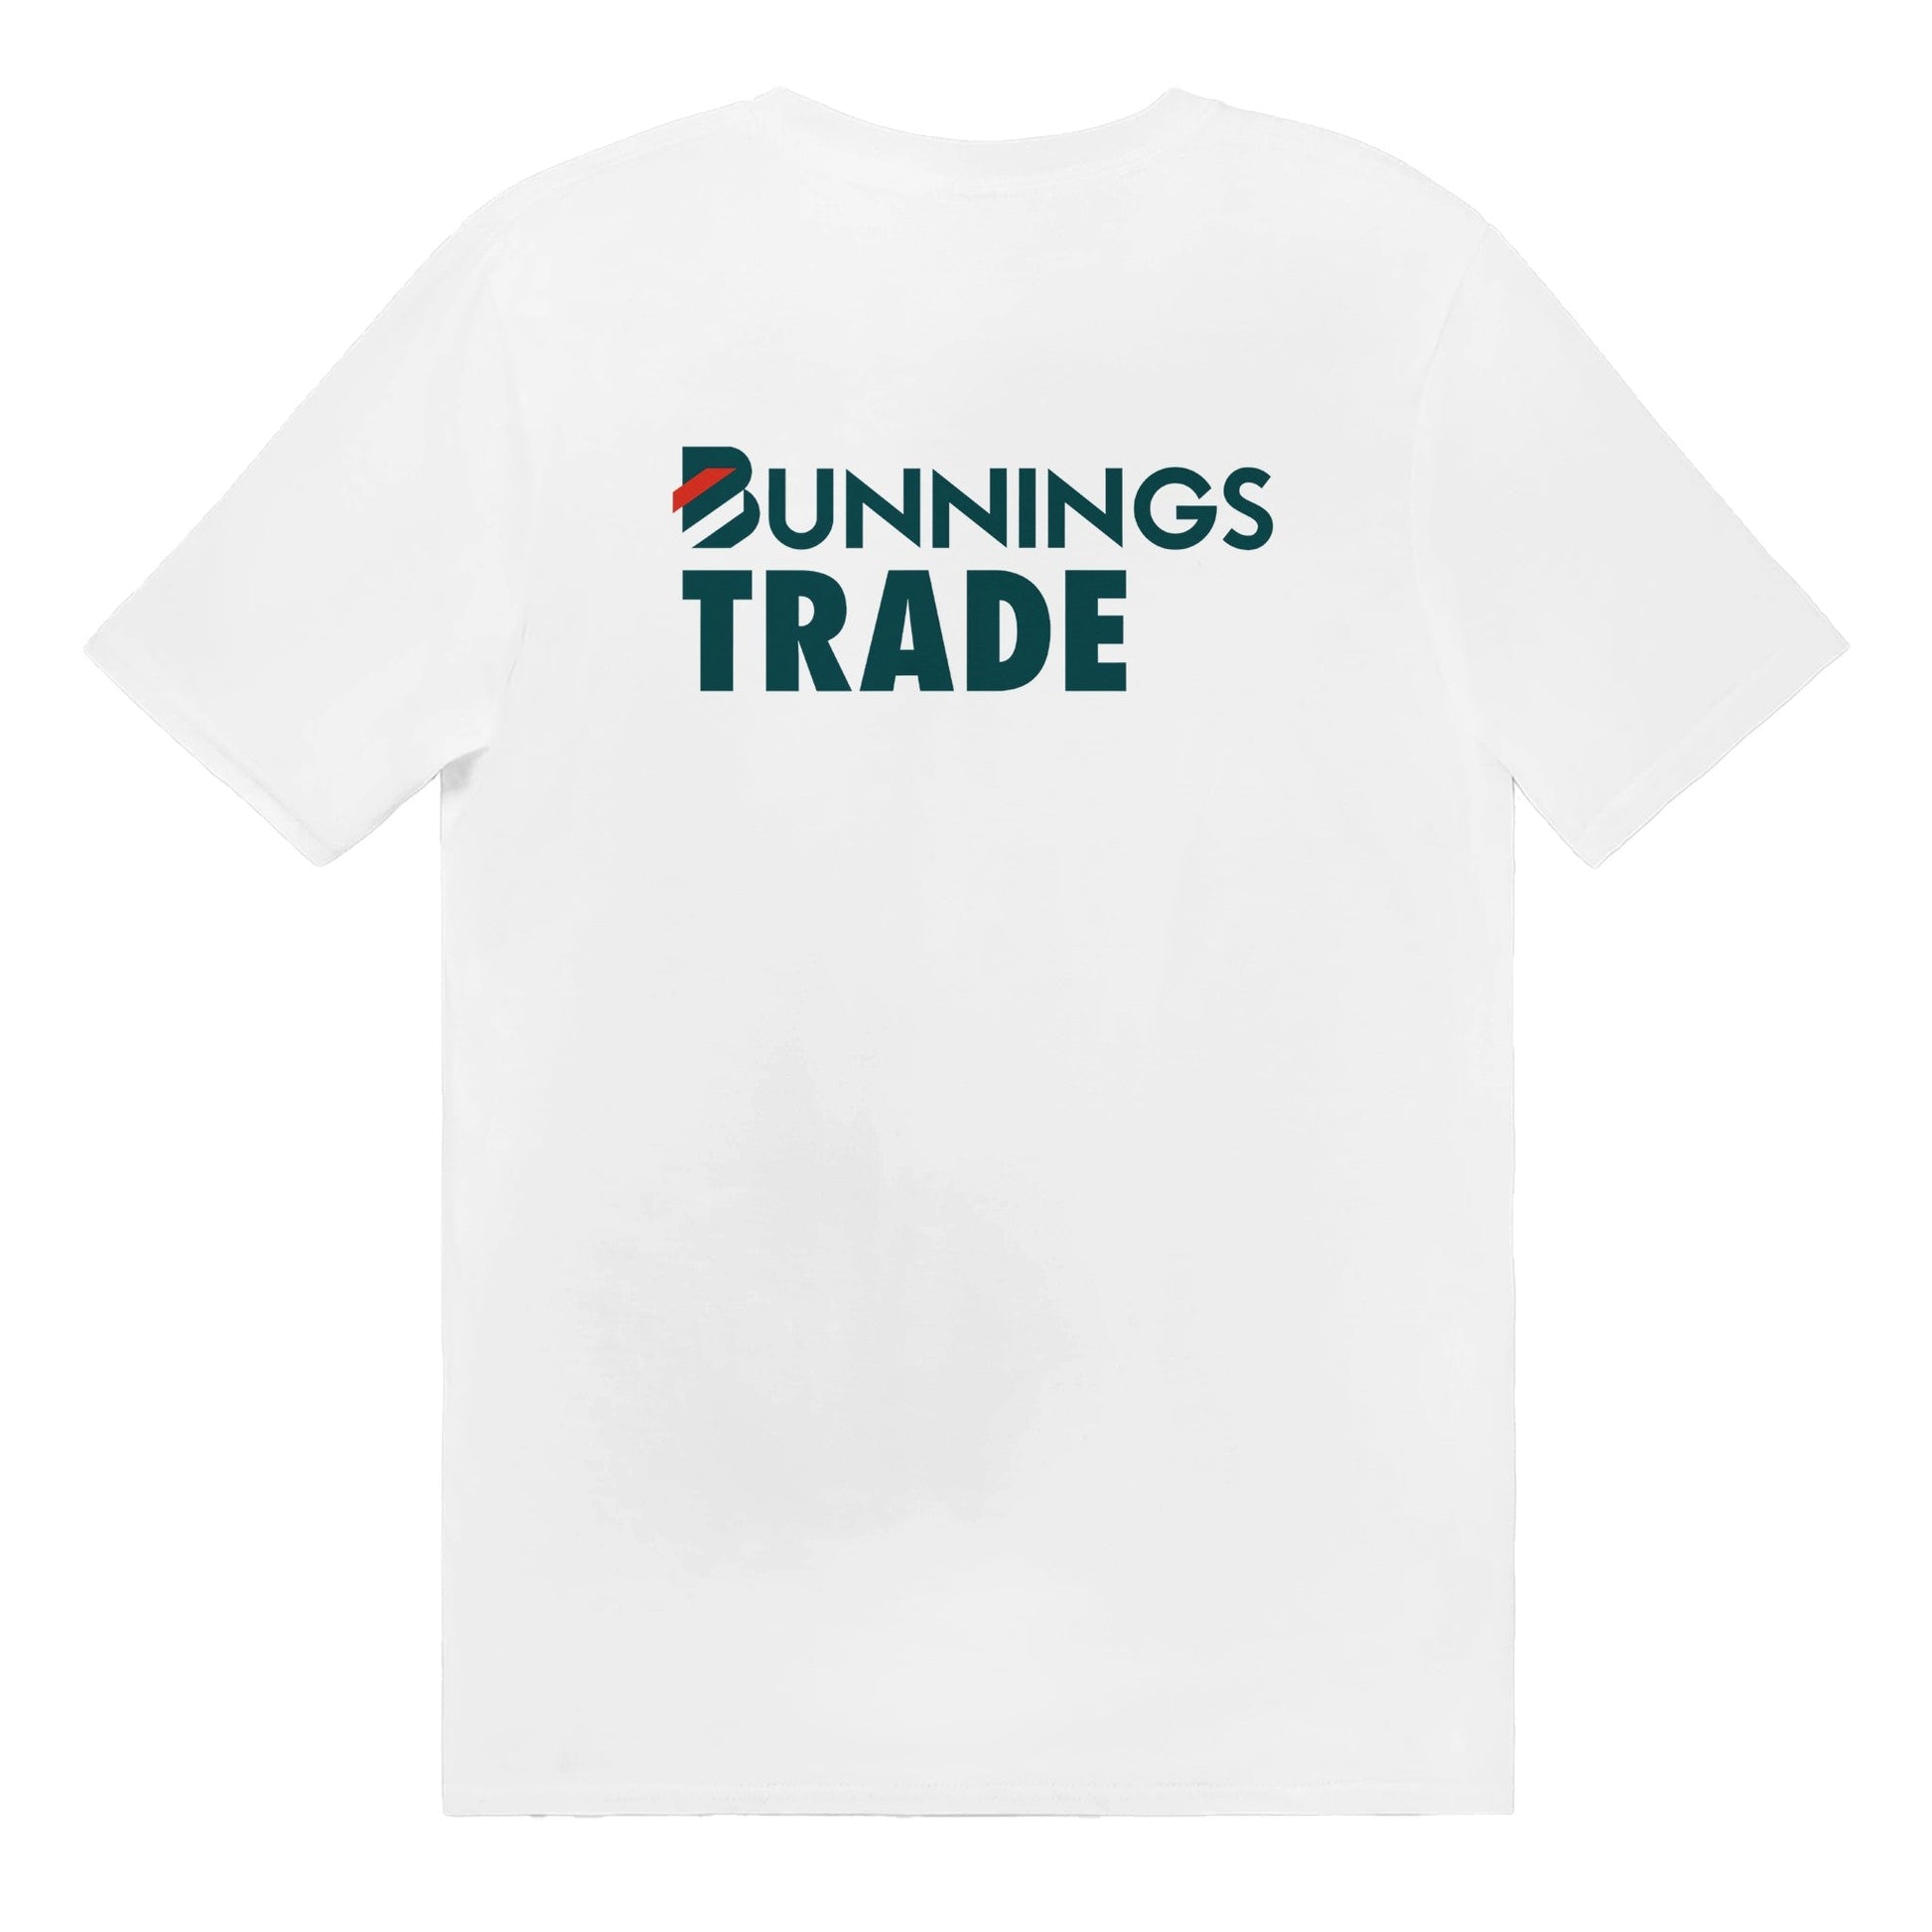 Bunnings Trade T-shirt Graphic Tee Australia Online White / S